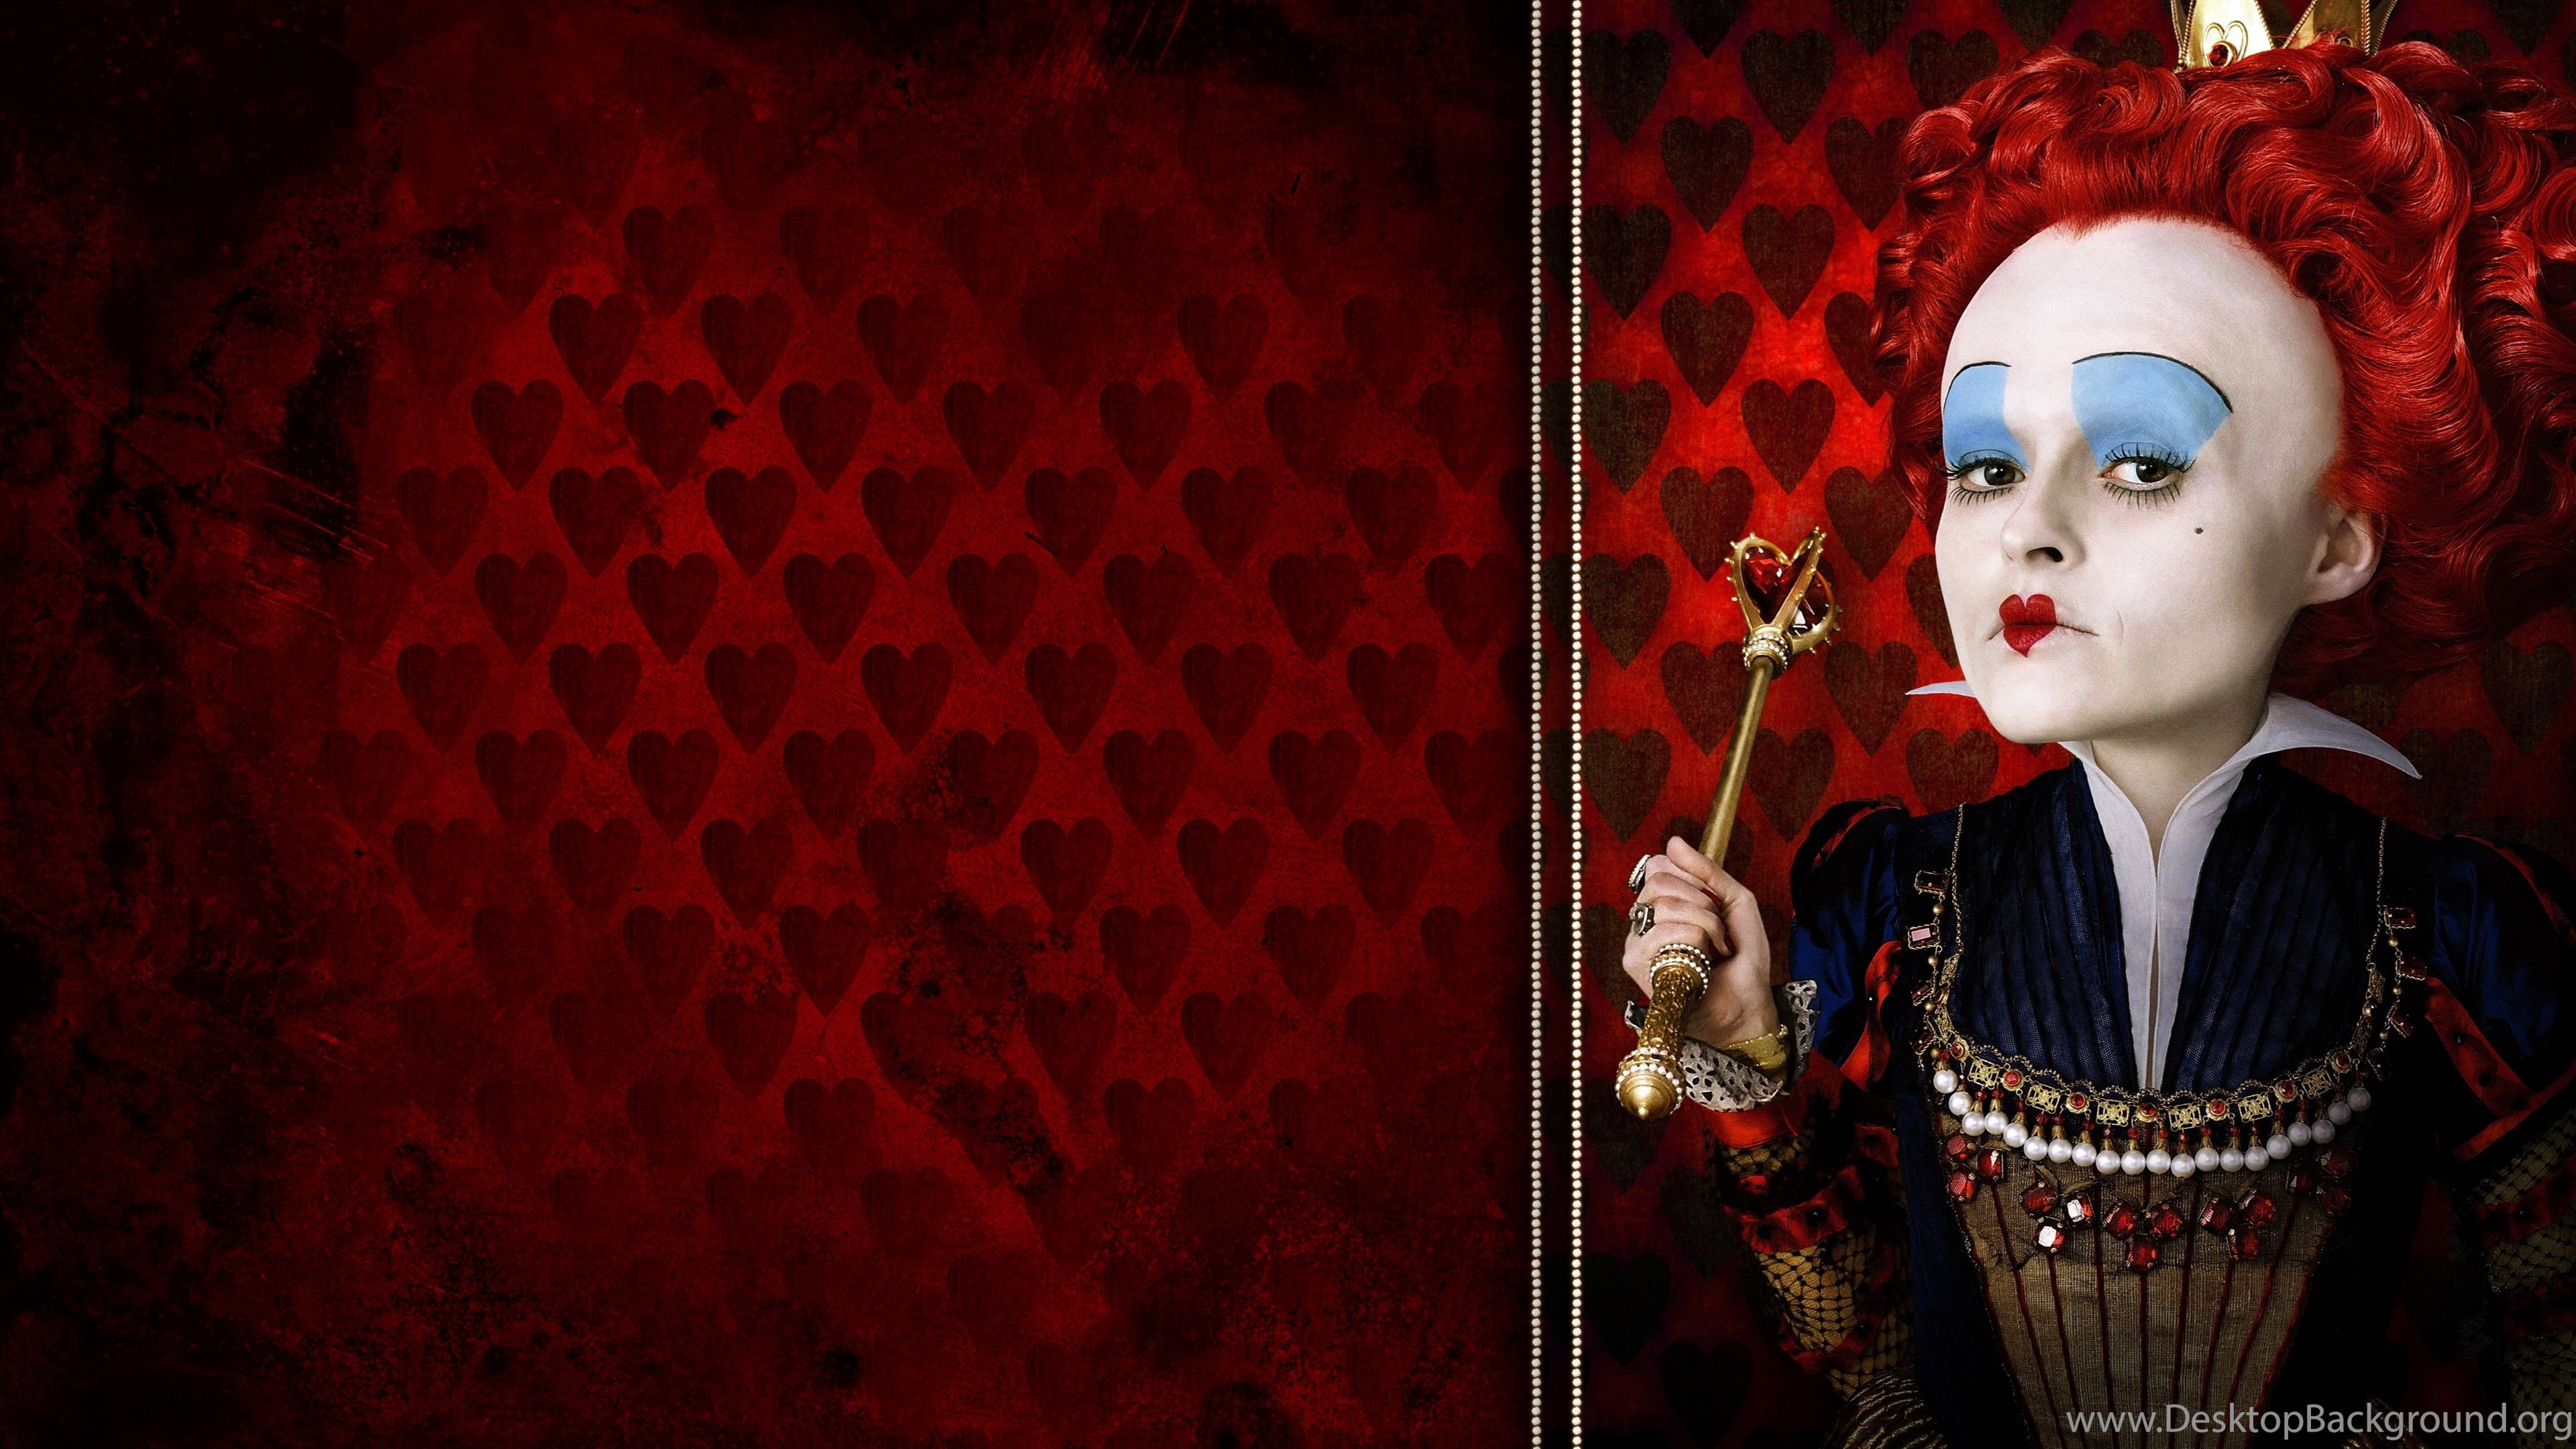 Download Download The Red Queen, Alice In Wonderland Wallpapers Wallpapers ...